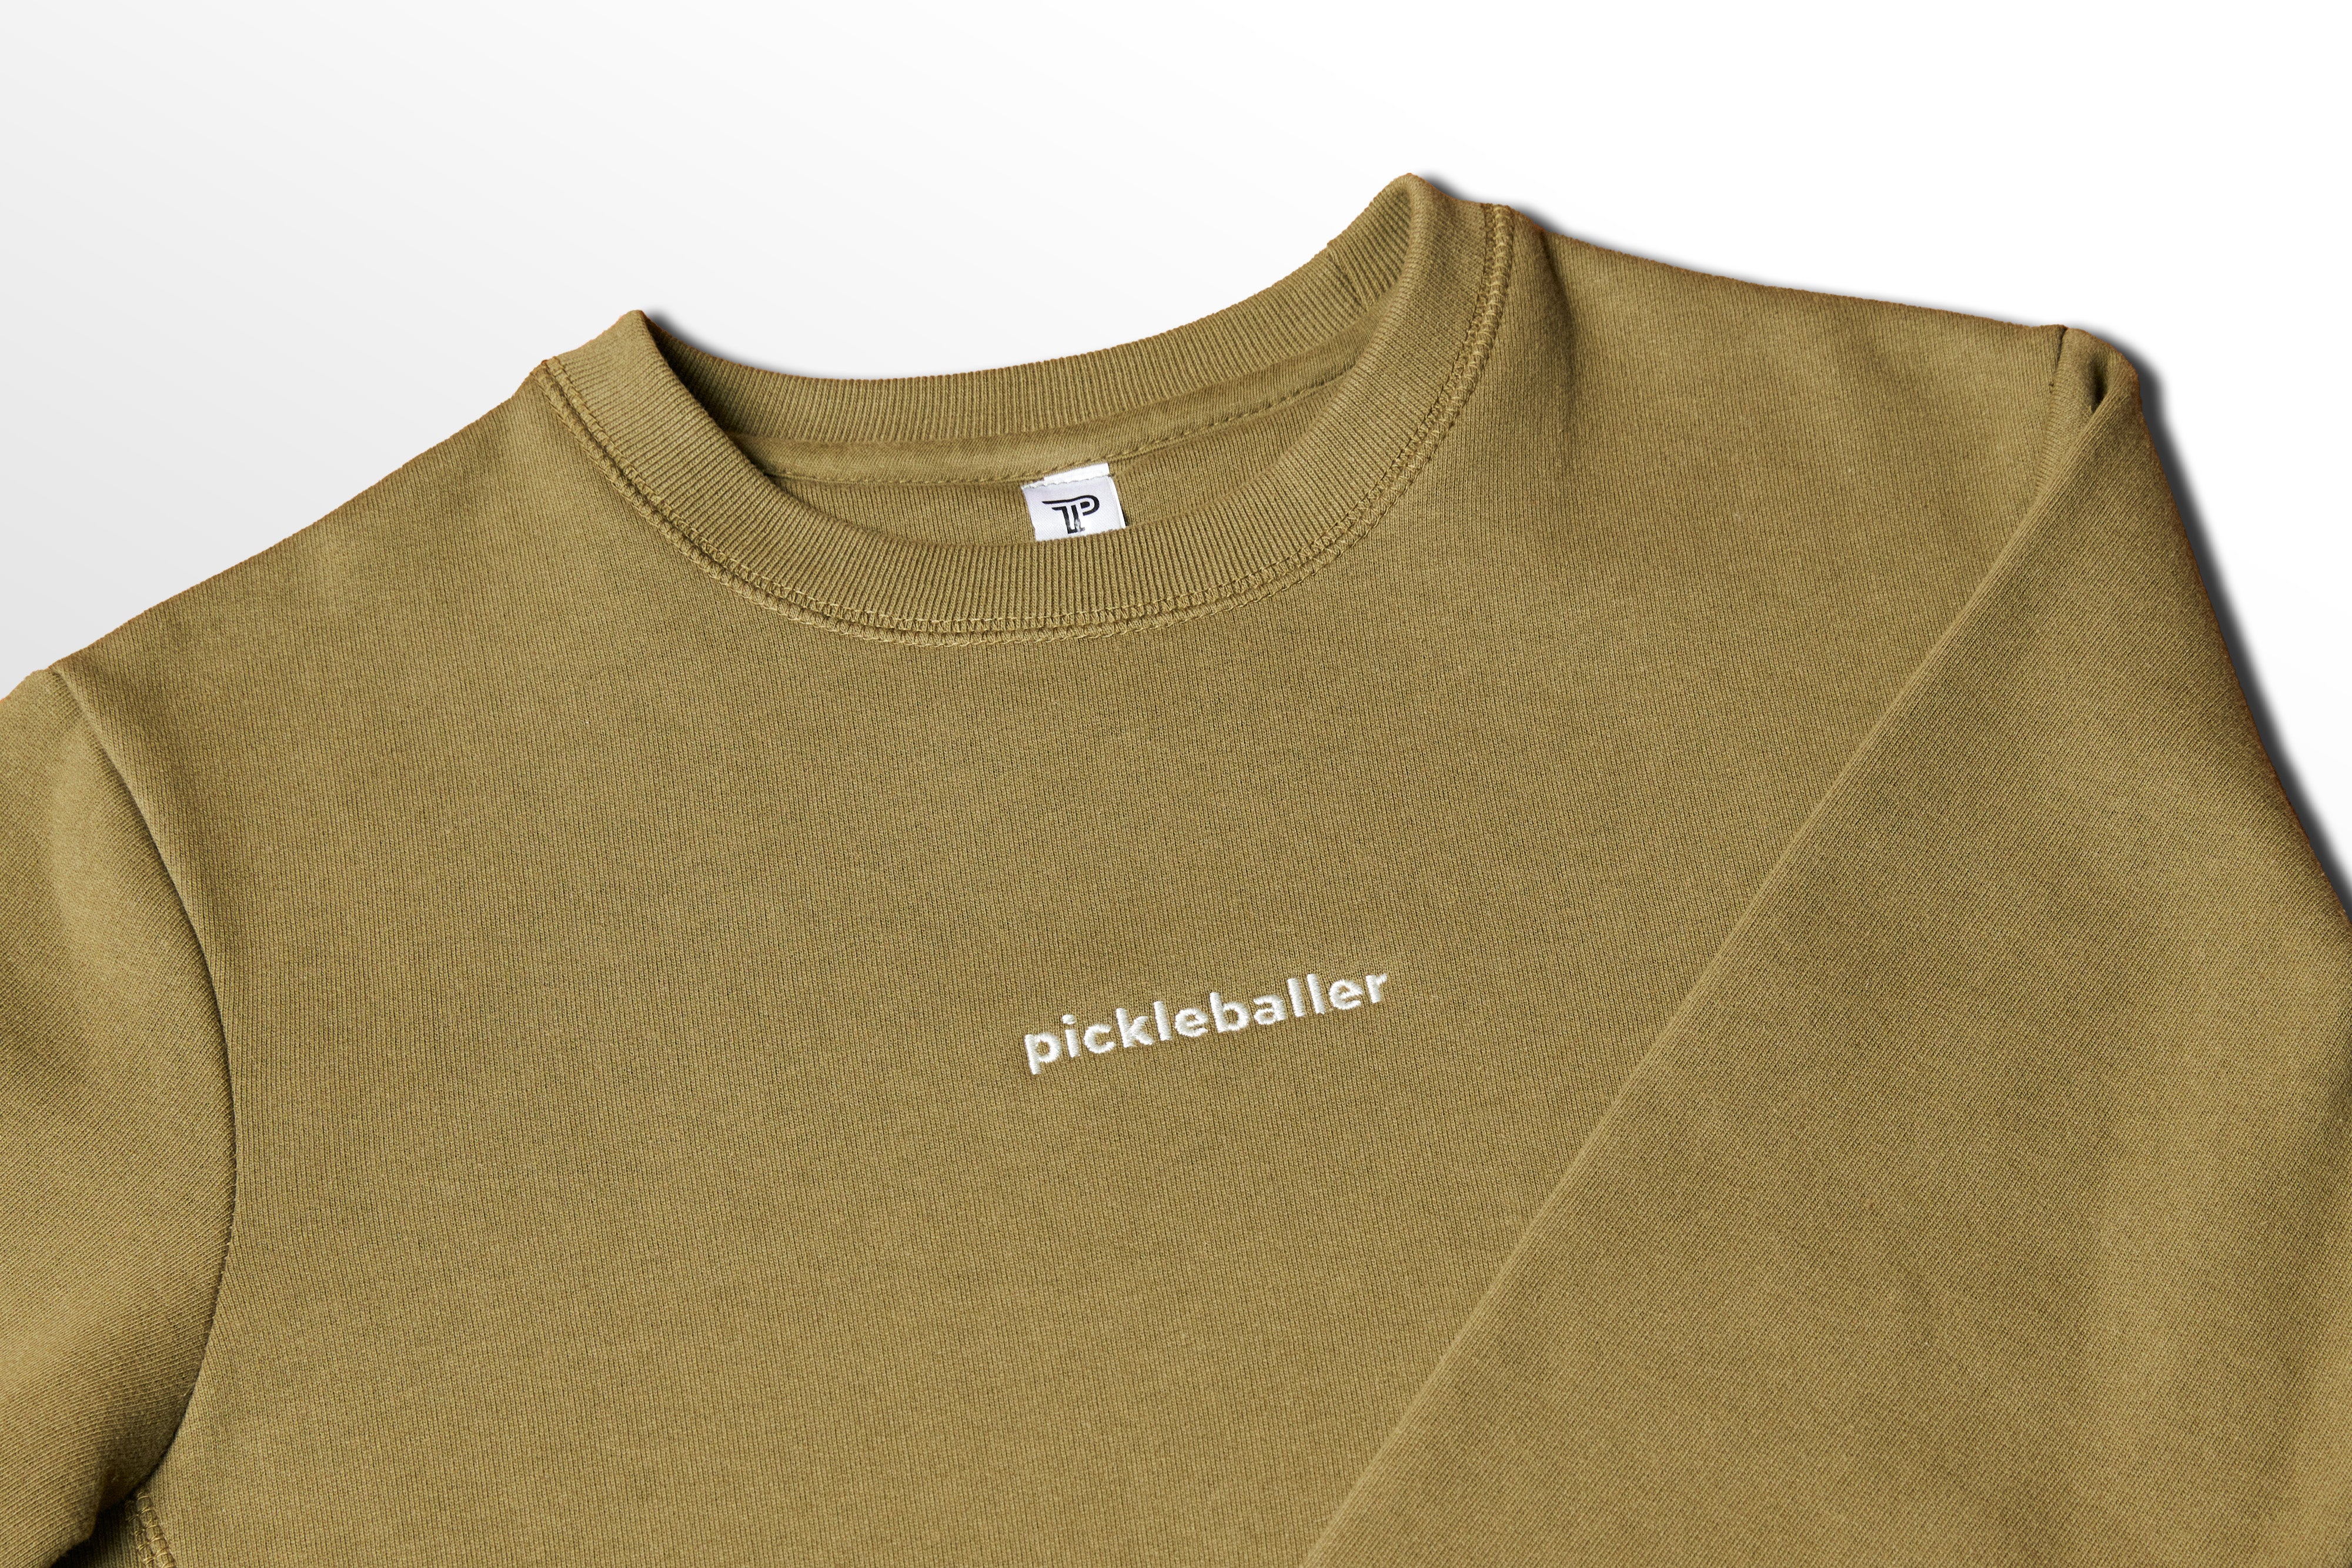 Embroidered Pickleballer Crewneck Unisex Sweatshirt